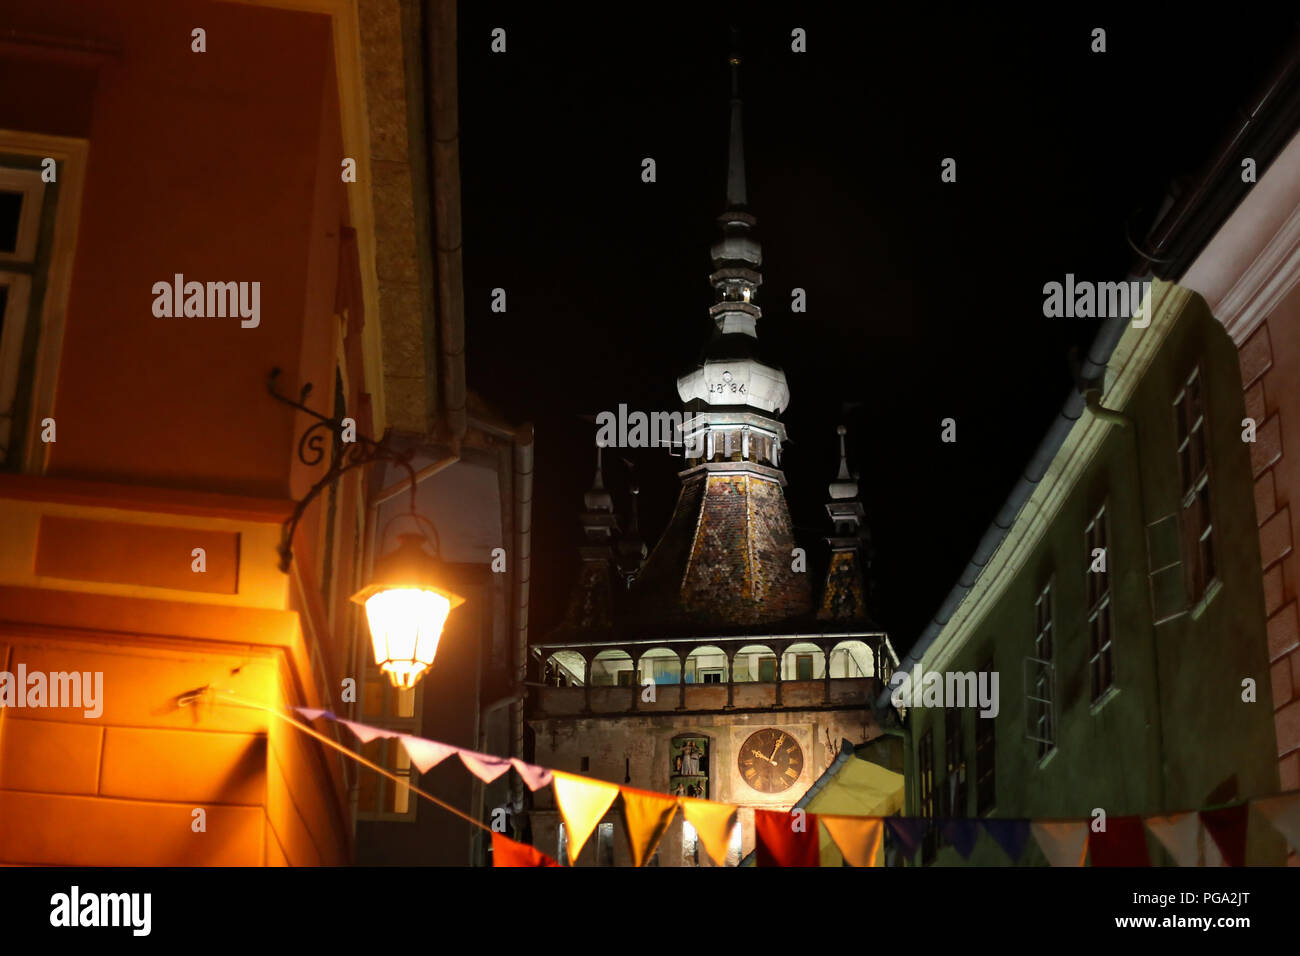 SIGHISOARA, ROMANIA - Agosto 17, 2018: scena notturna con la torre con orologio della città medievale di Sighisoara in Transilvania, Romania, in Sighisoara, o Foto Stock